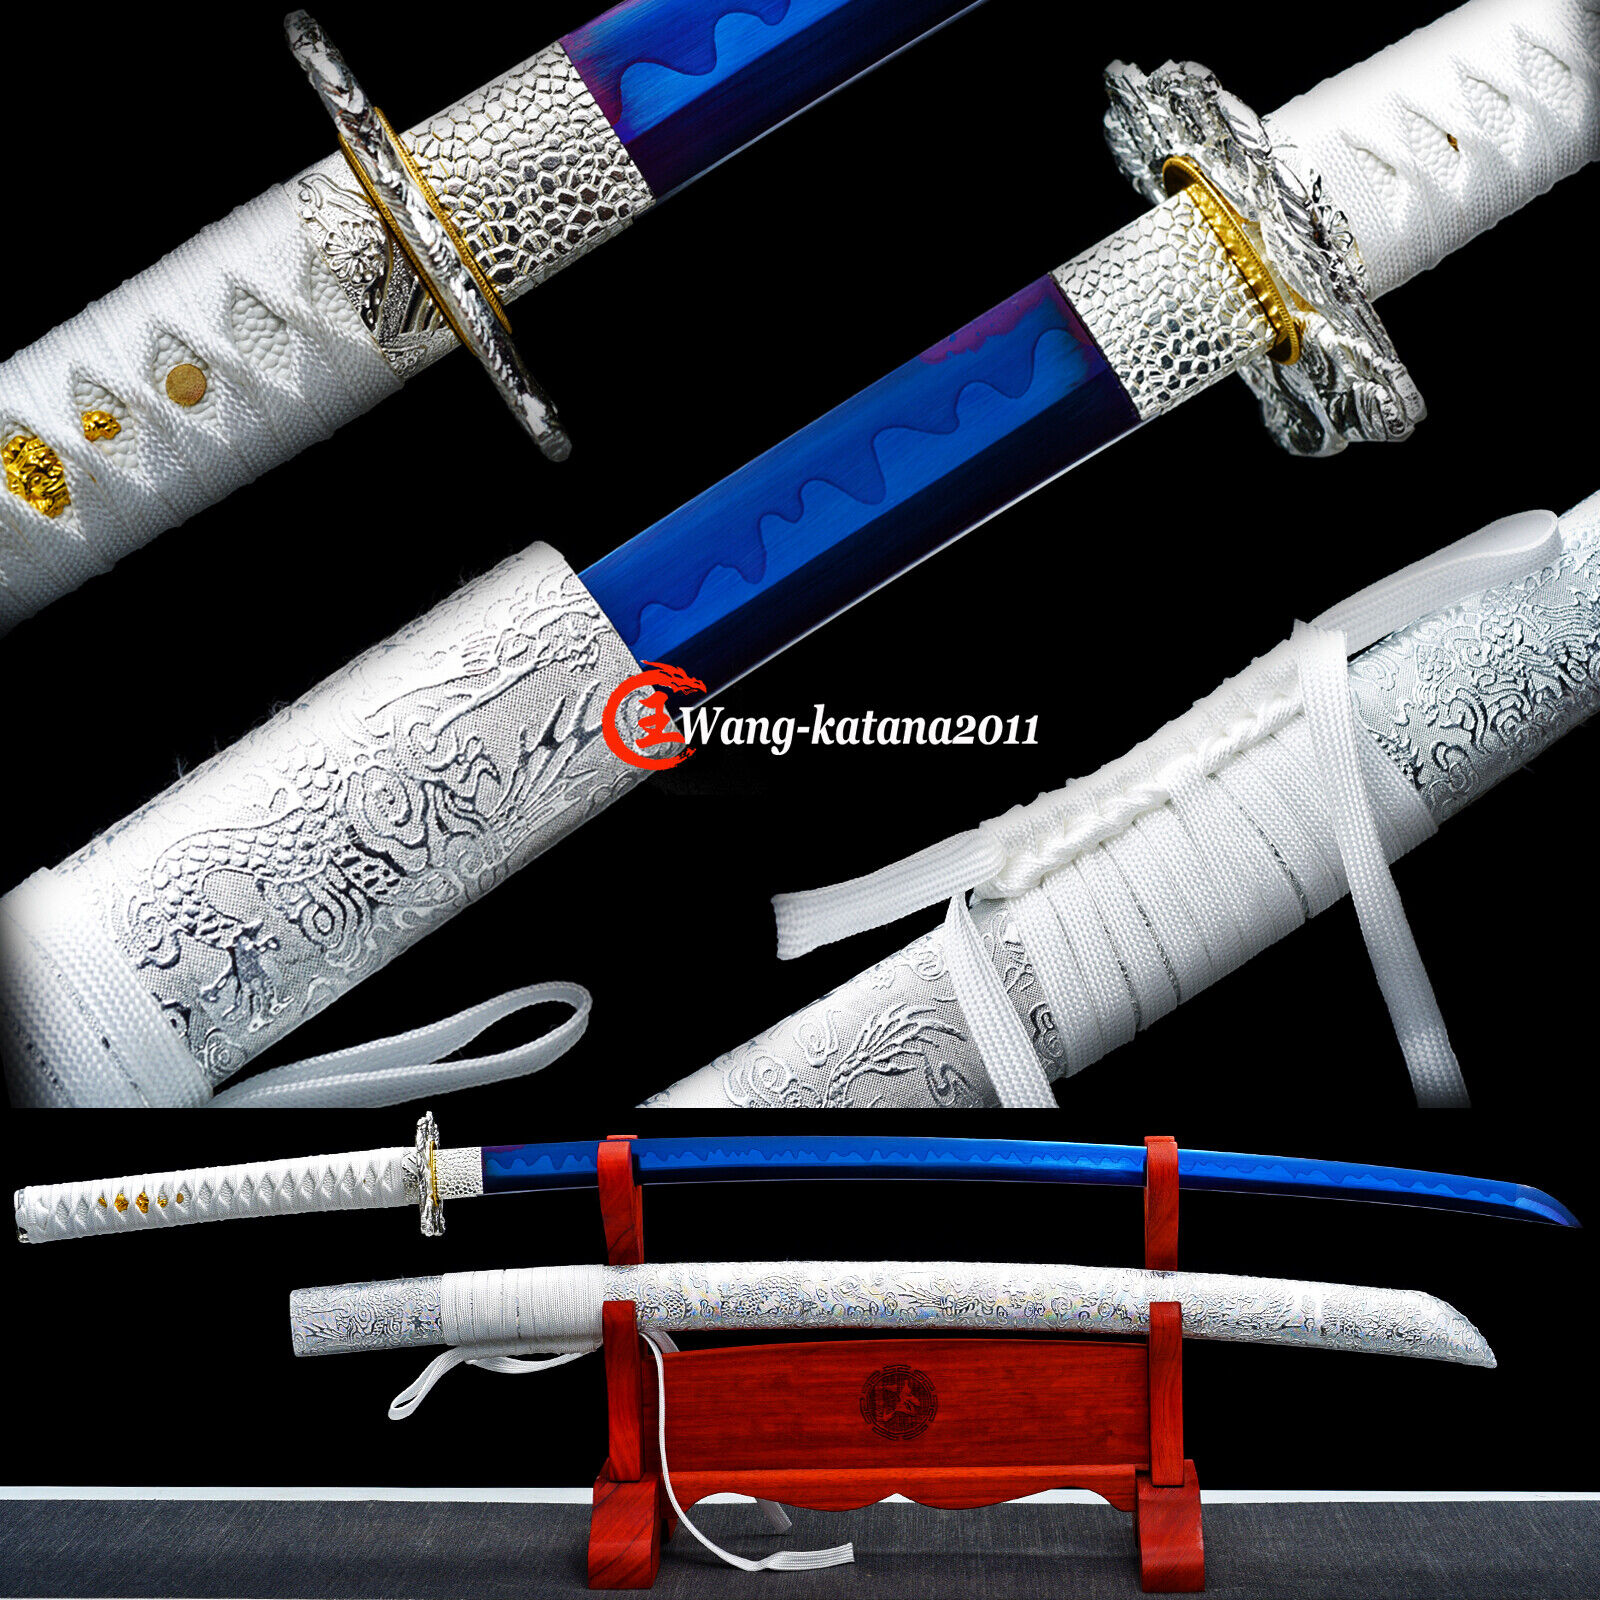 Elegant White Katana Blue T10 Carbon Steel Battle Ready Japanese Samurai Sword